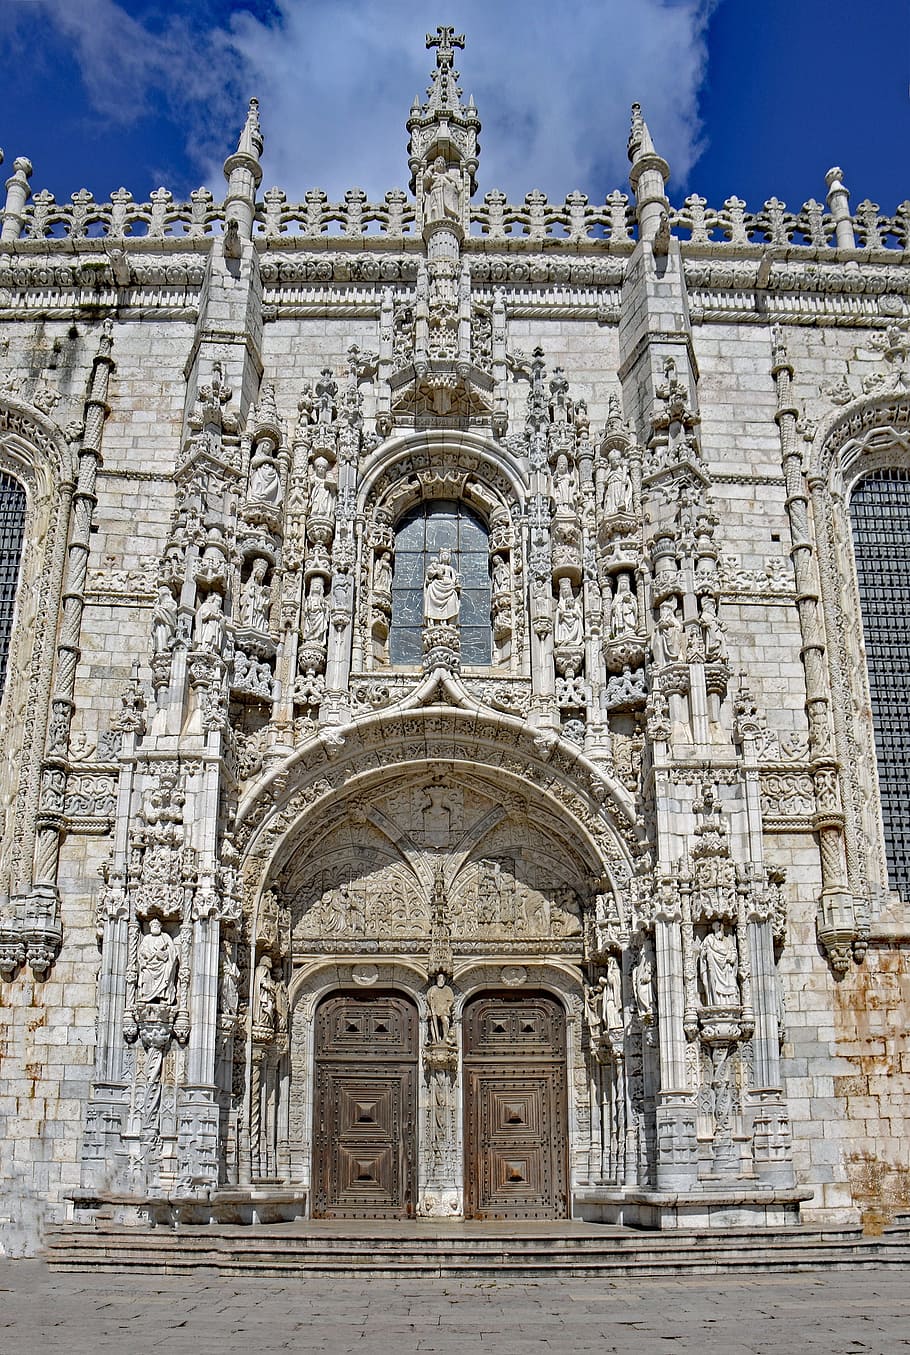 Lisboa, Portugal, Monasterio de los Jerónimos, monasterio, mosteiro dos jerónimos, iglesia, fe, religión, lugares de interés, unesco